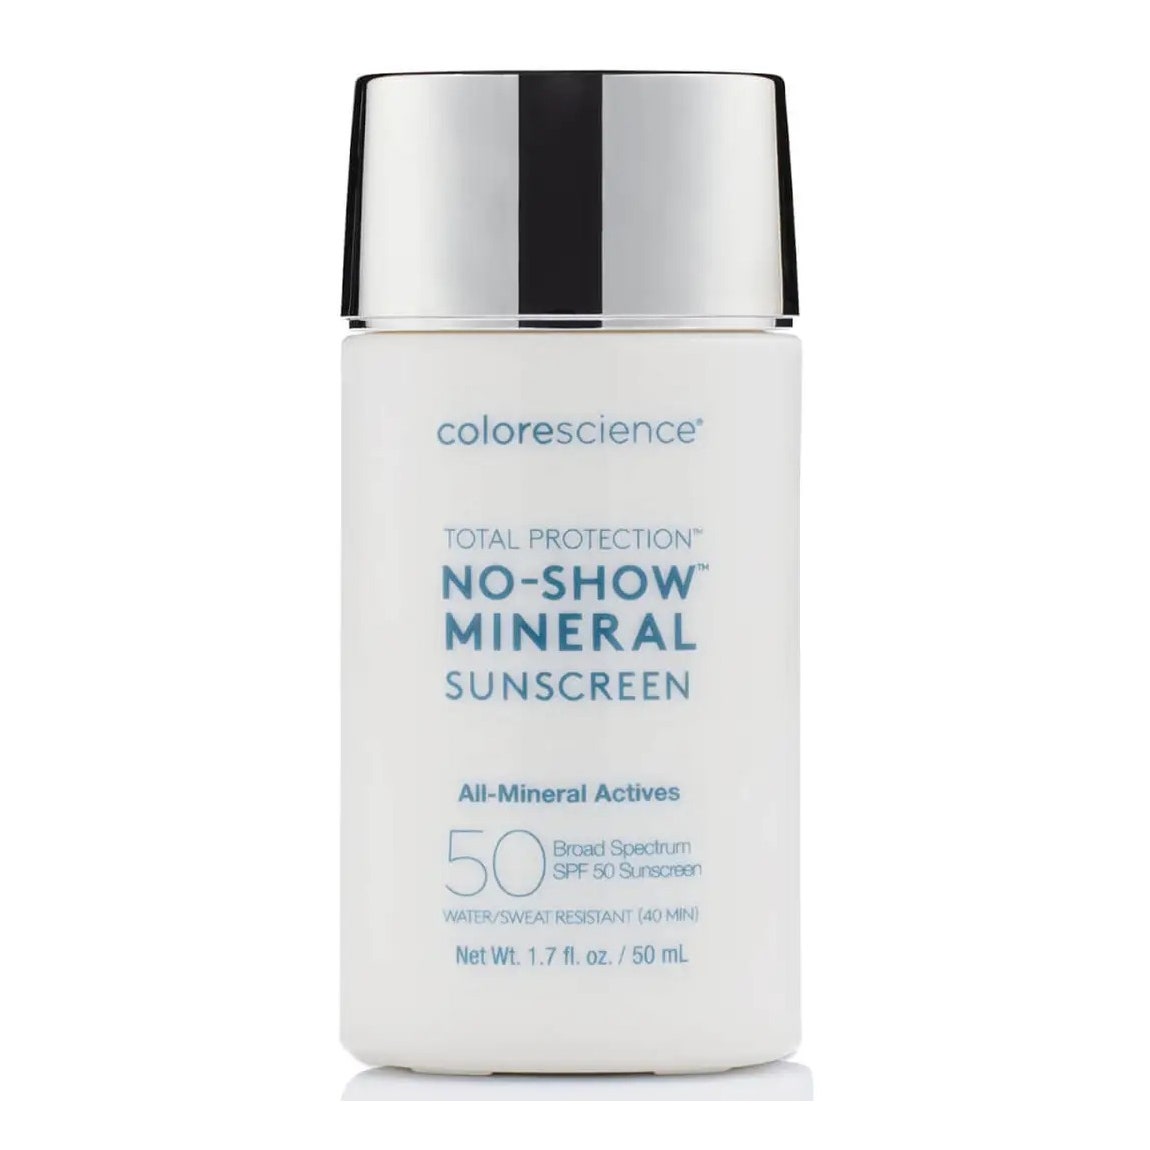 Colorescience Total Protection No-Show Mineral Sunscreen SPF 50 flache weiße Flasche mit flachem silbernen Verschluss auf weißem Hintergrund